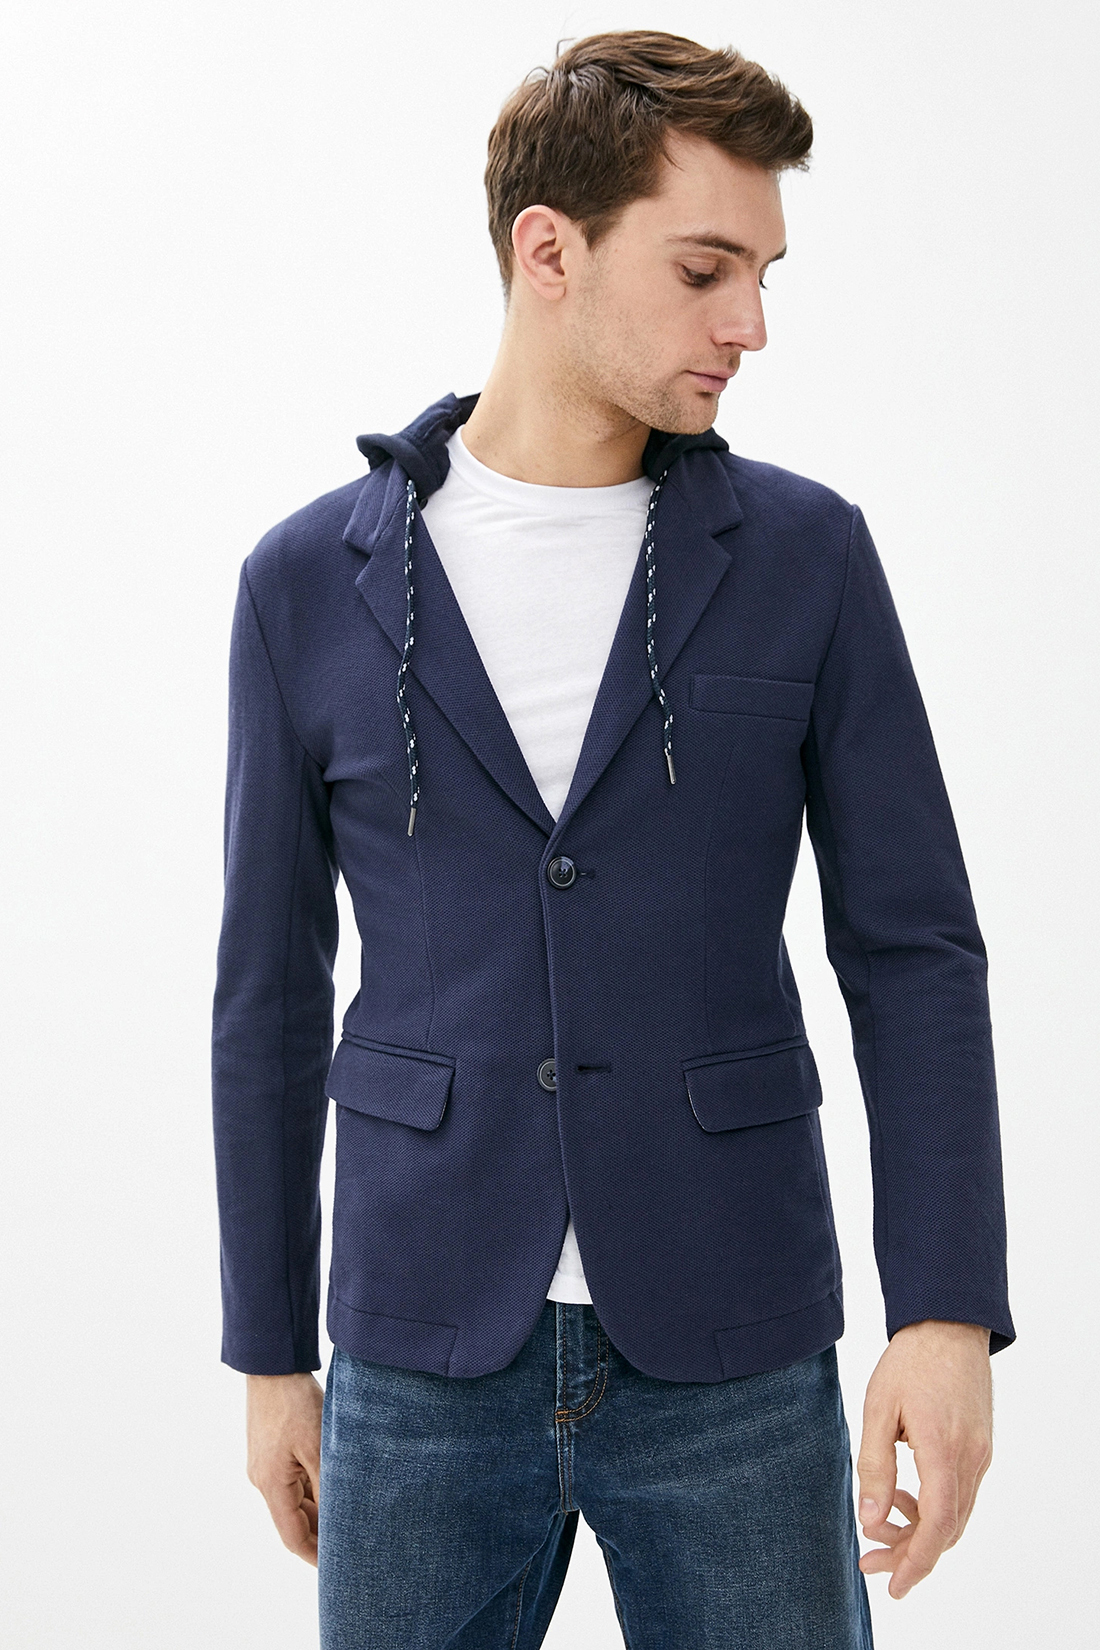 Пиджак с капюшоном (арт. baon B620005), размер XL, цвет синий Пиджак с капюшоном (арт. baon B620005) - фото 1